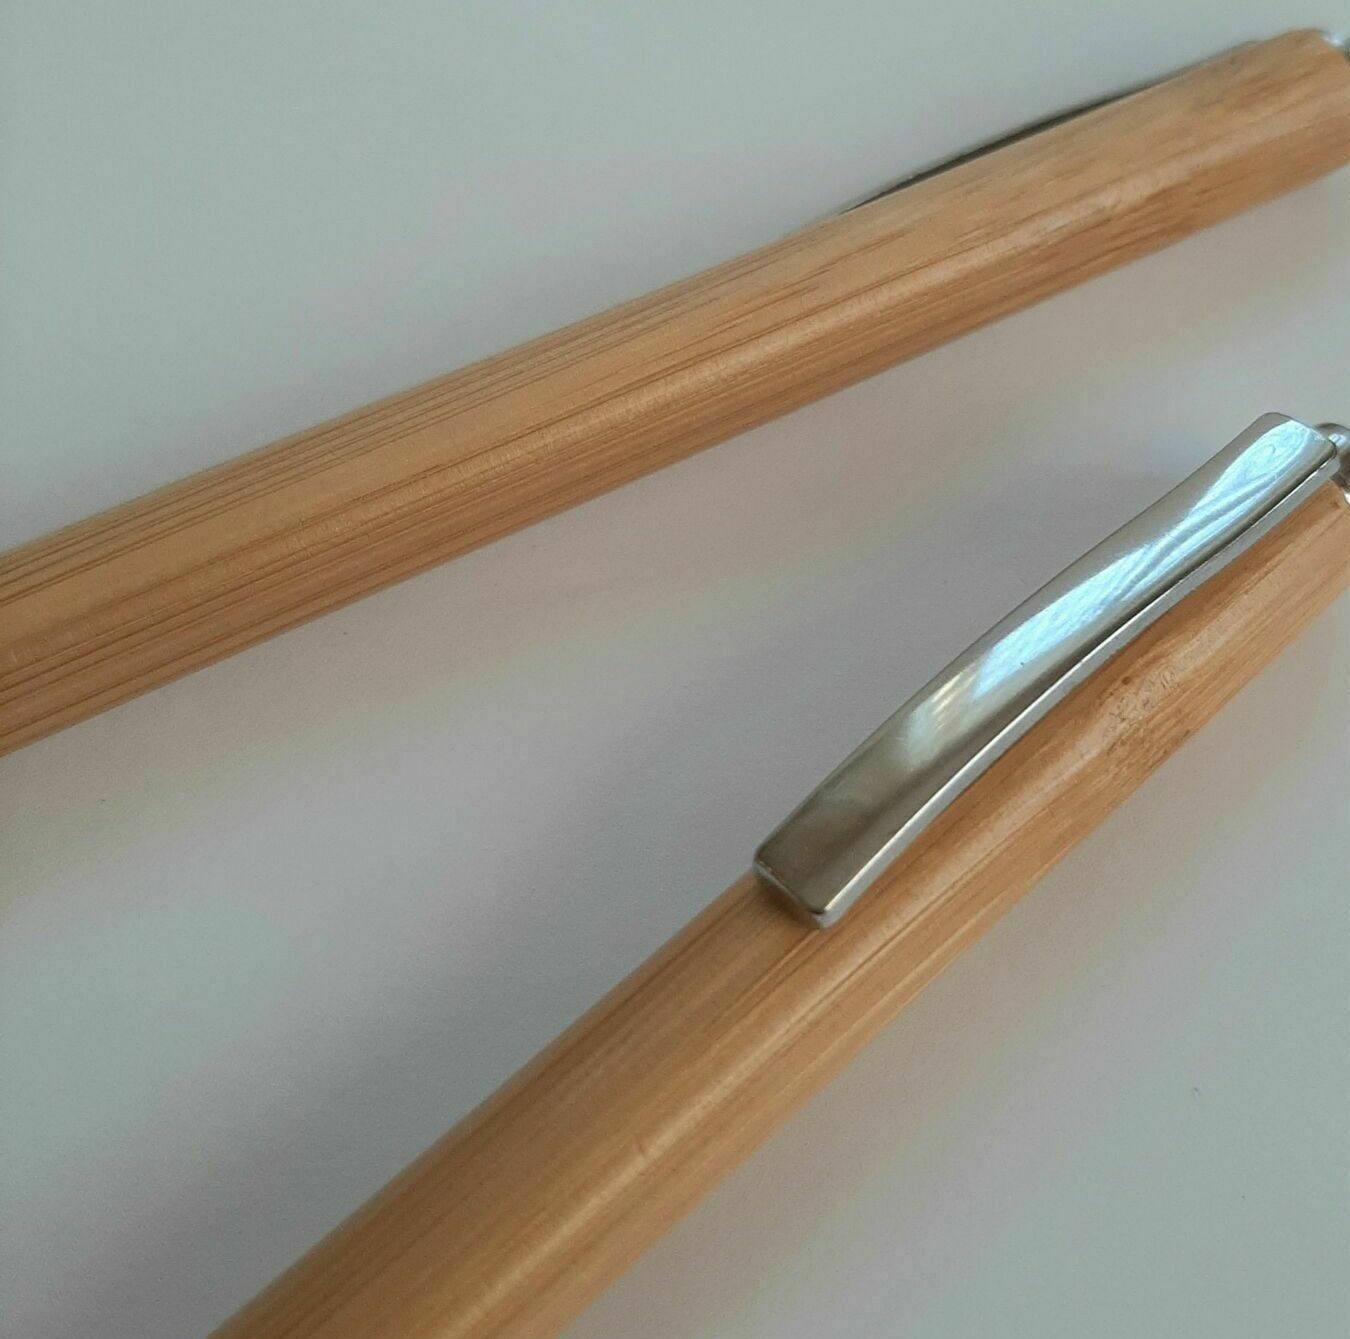 ручки из бамбука оптом